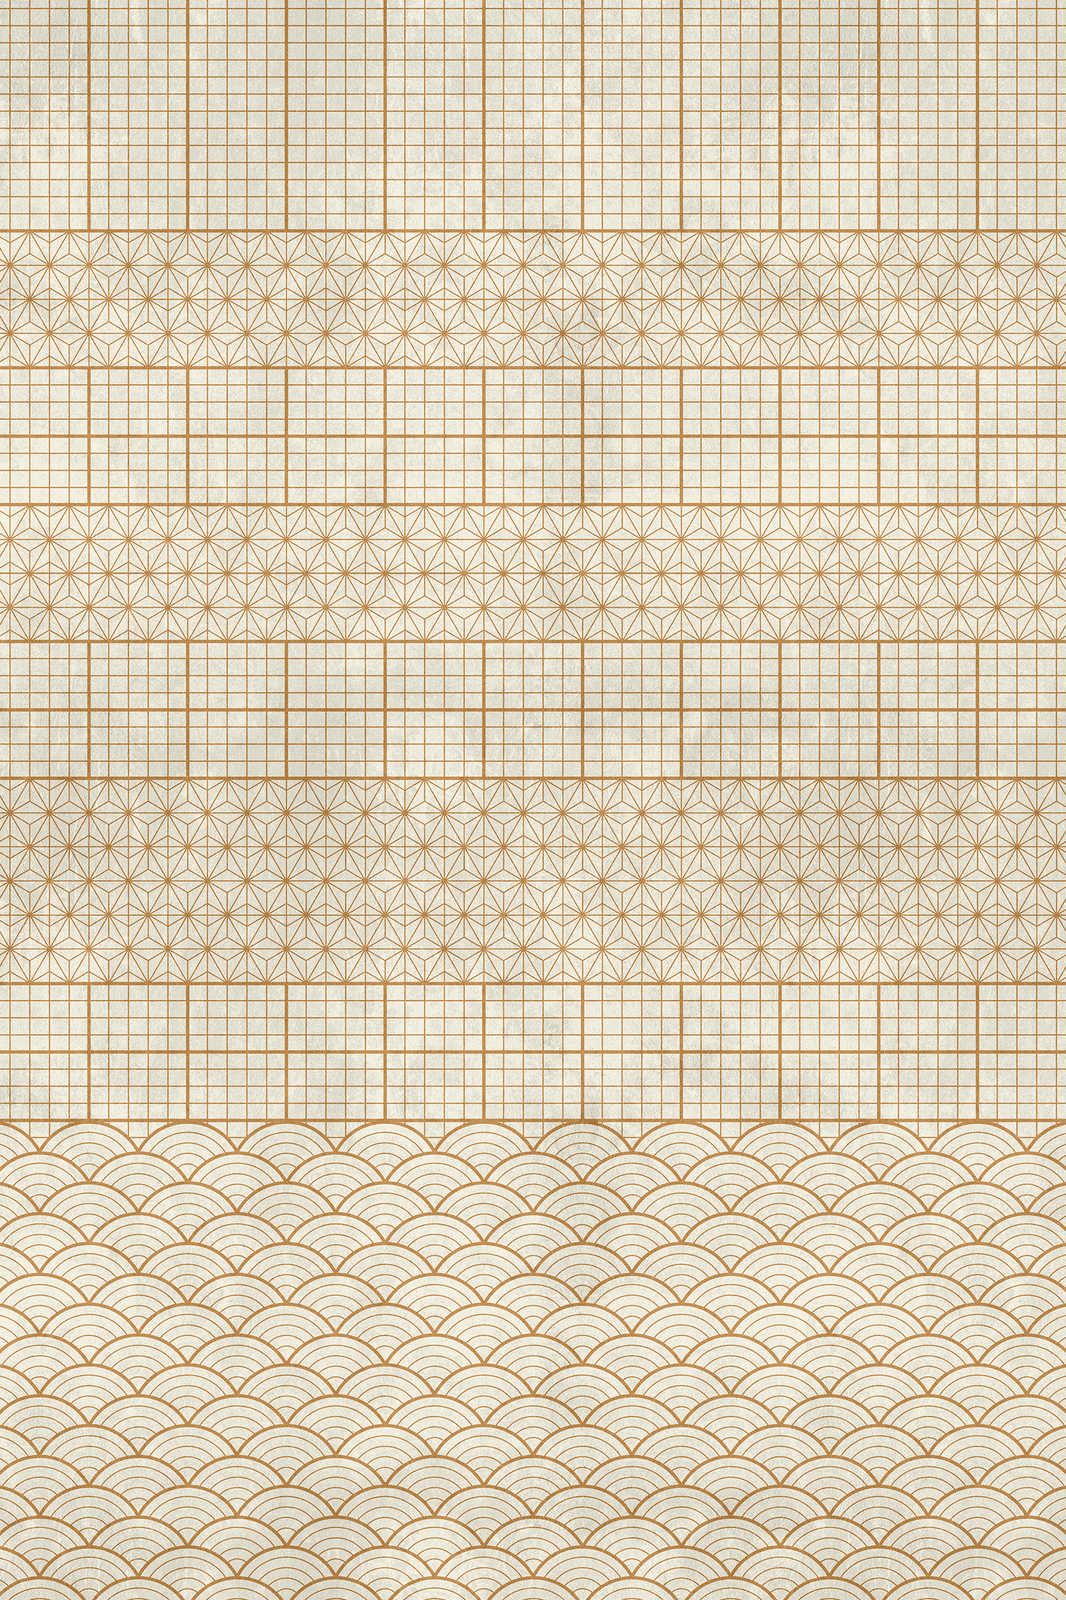             Volière 4 - Toile beige décorée or style vintage - 1,20 m x 0,80 m
        